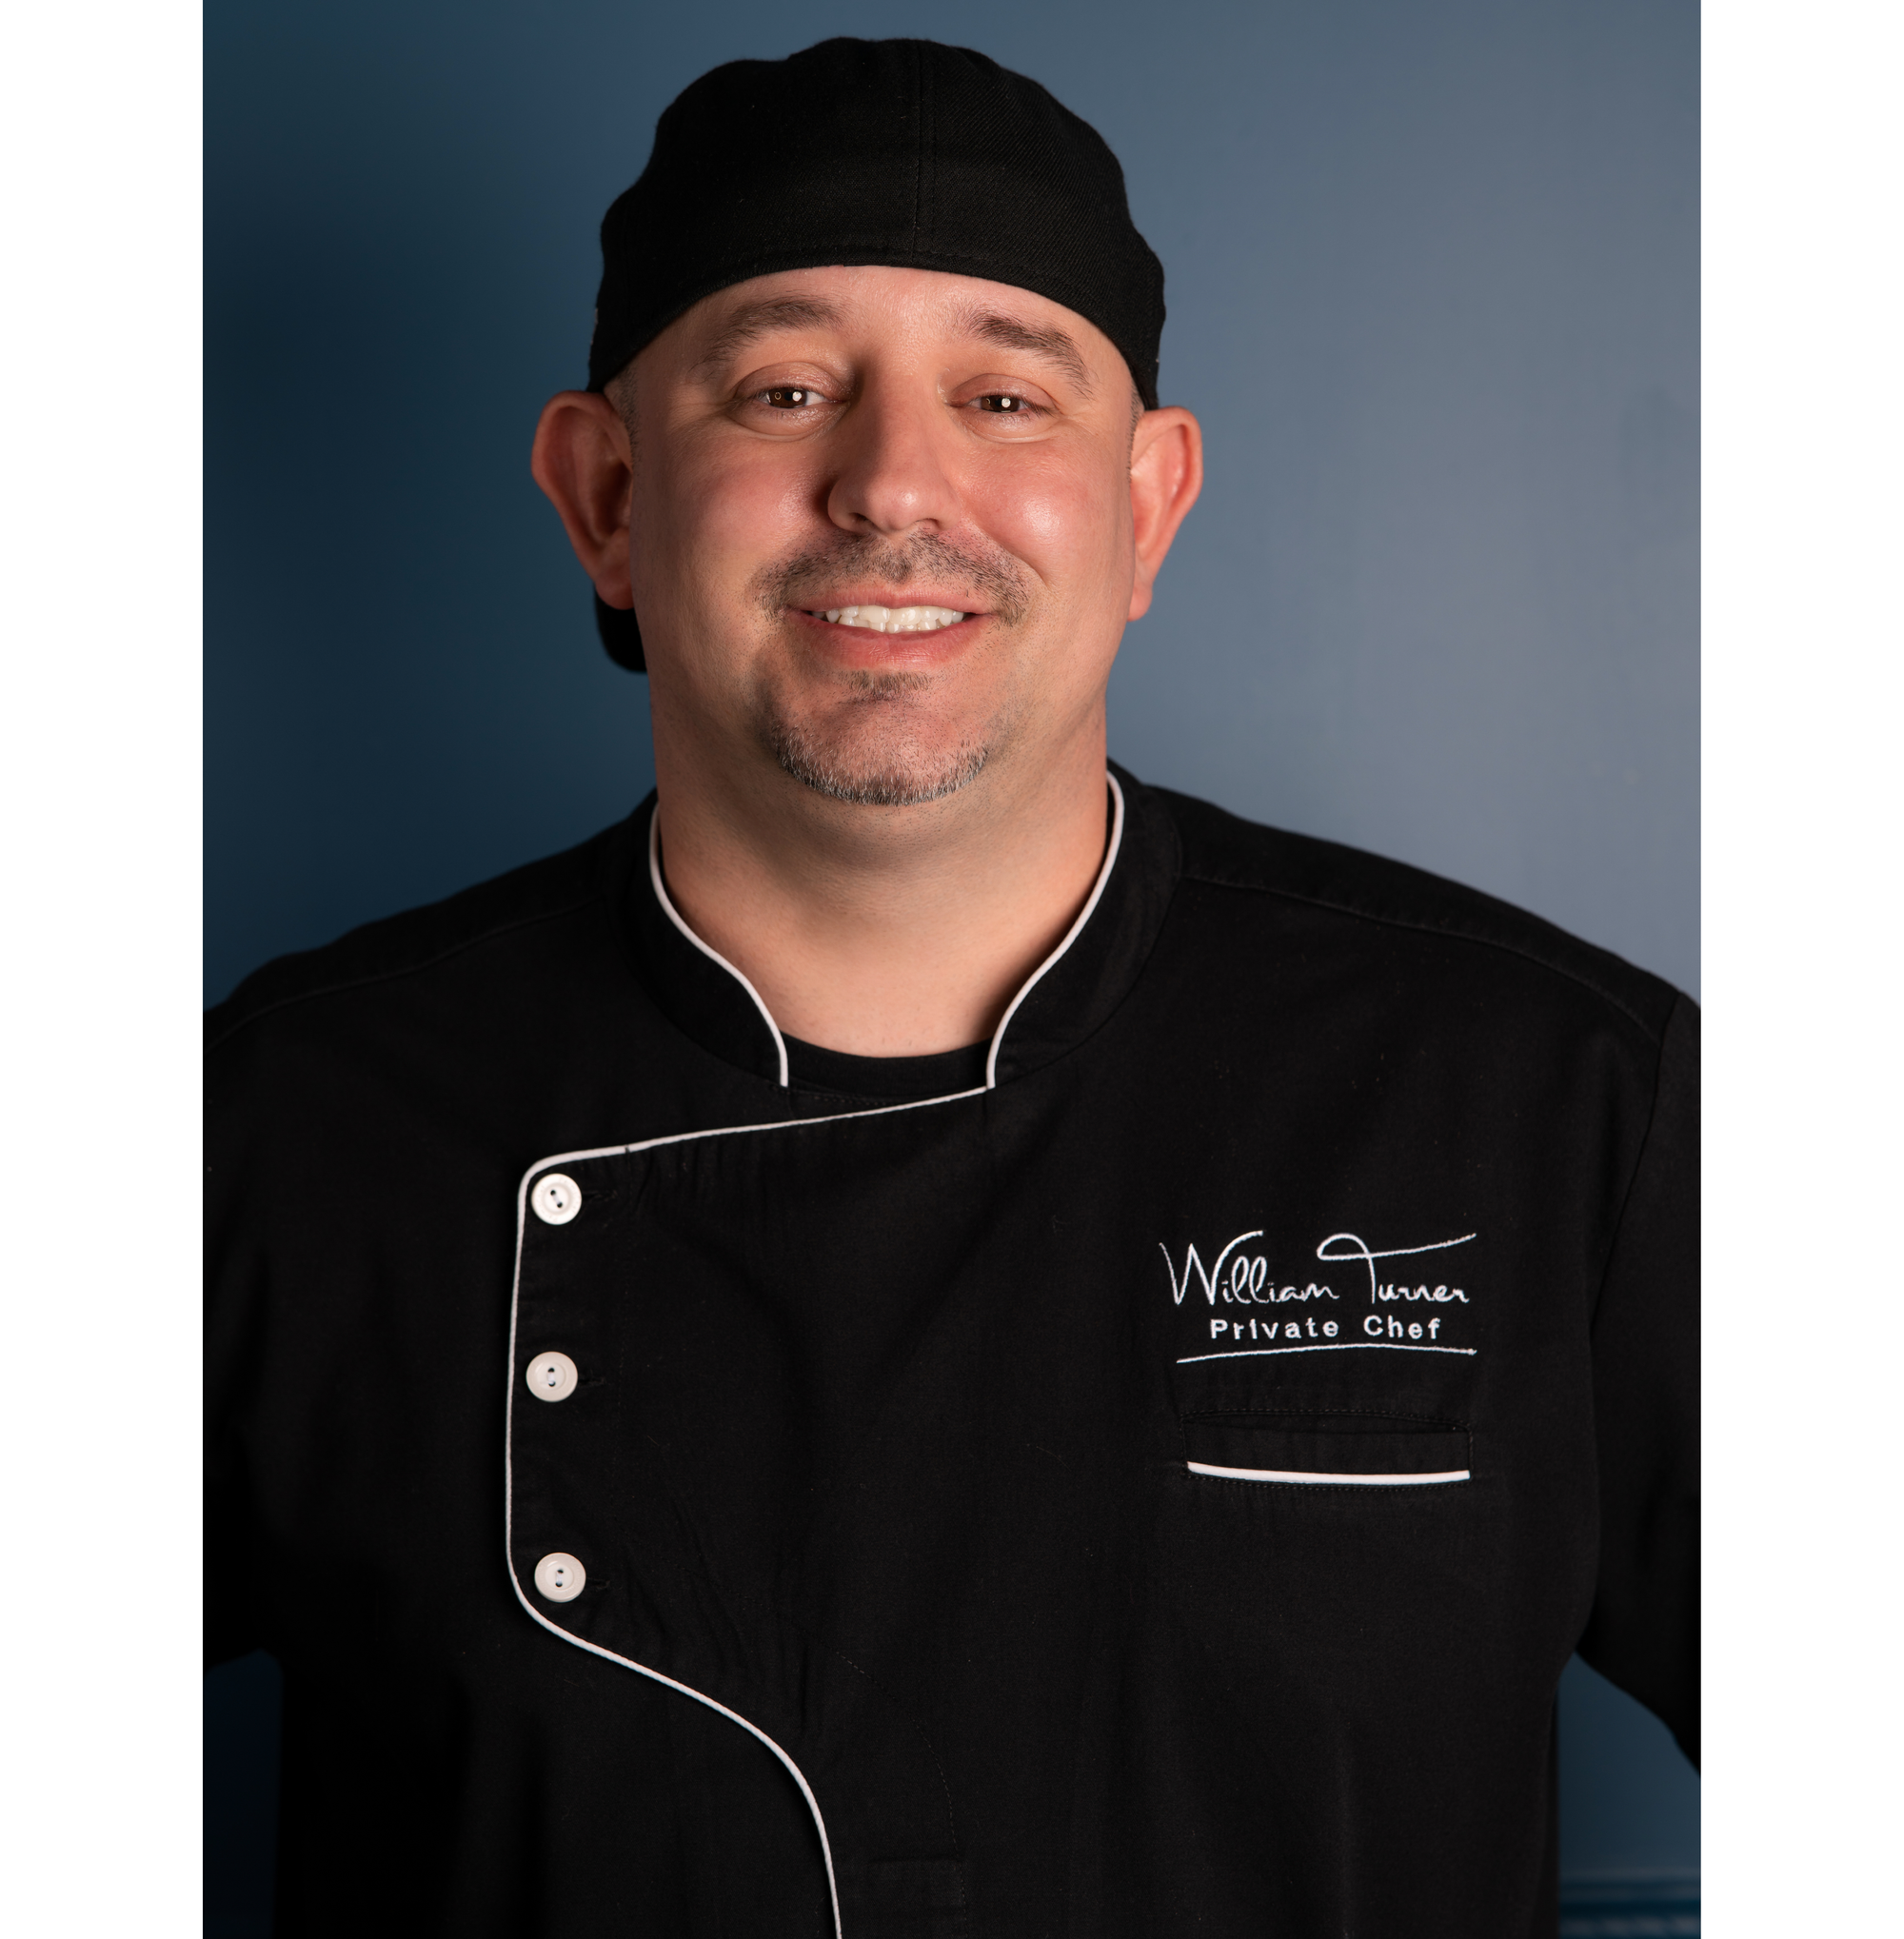 Concierge Service -  Private Chef William Turner